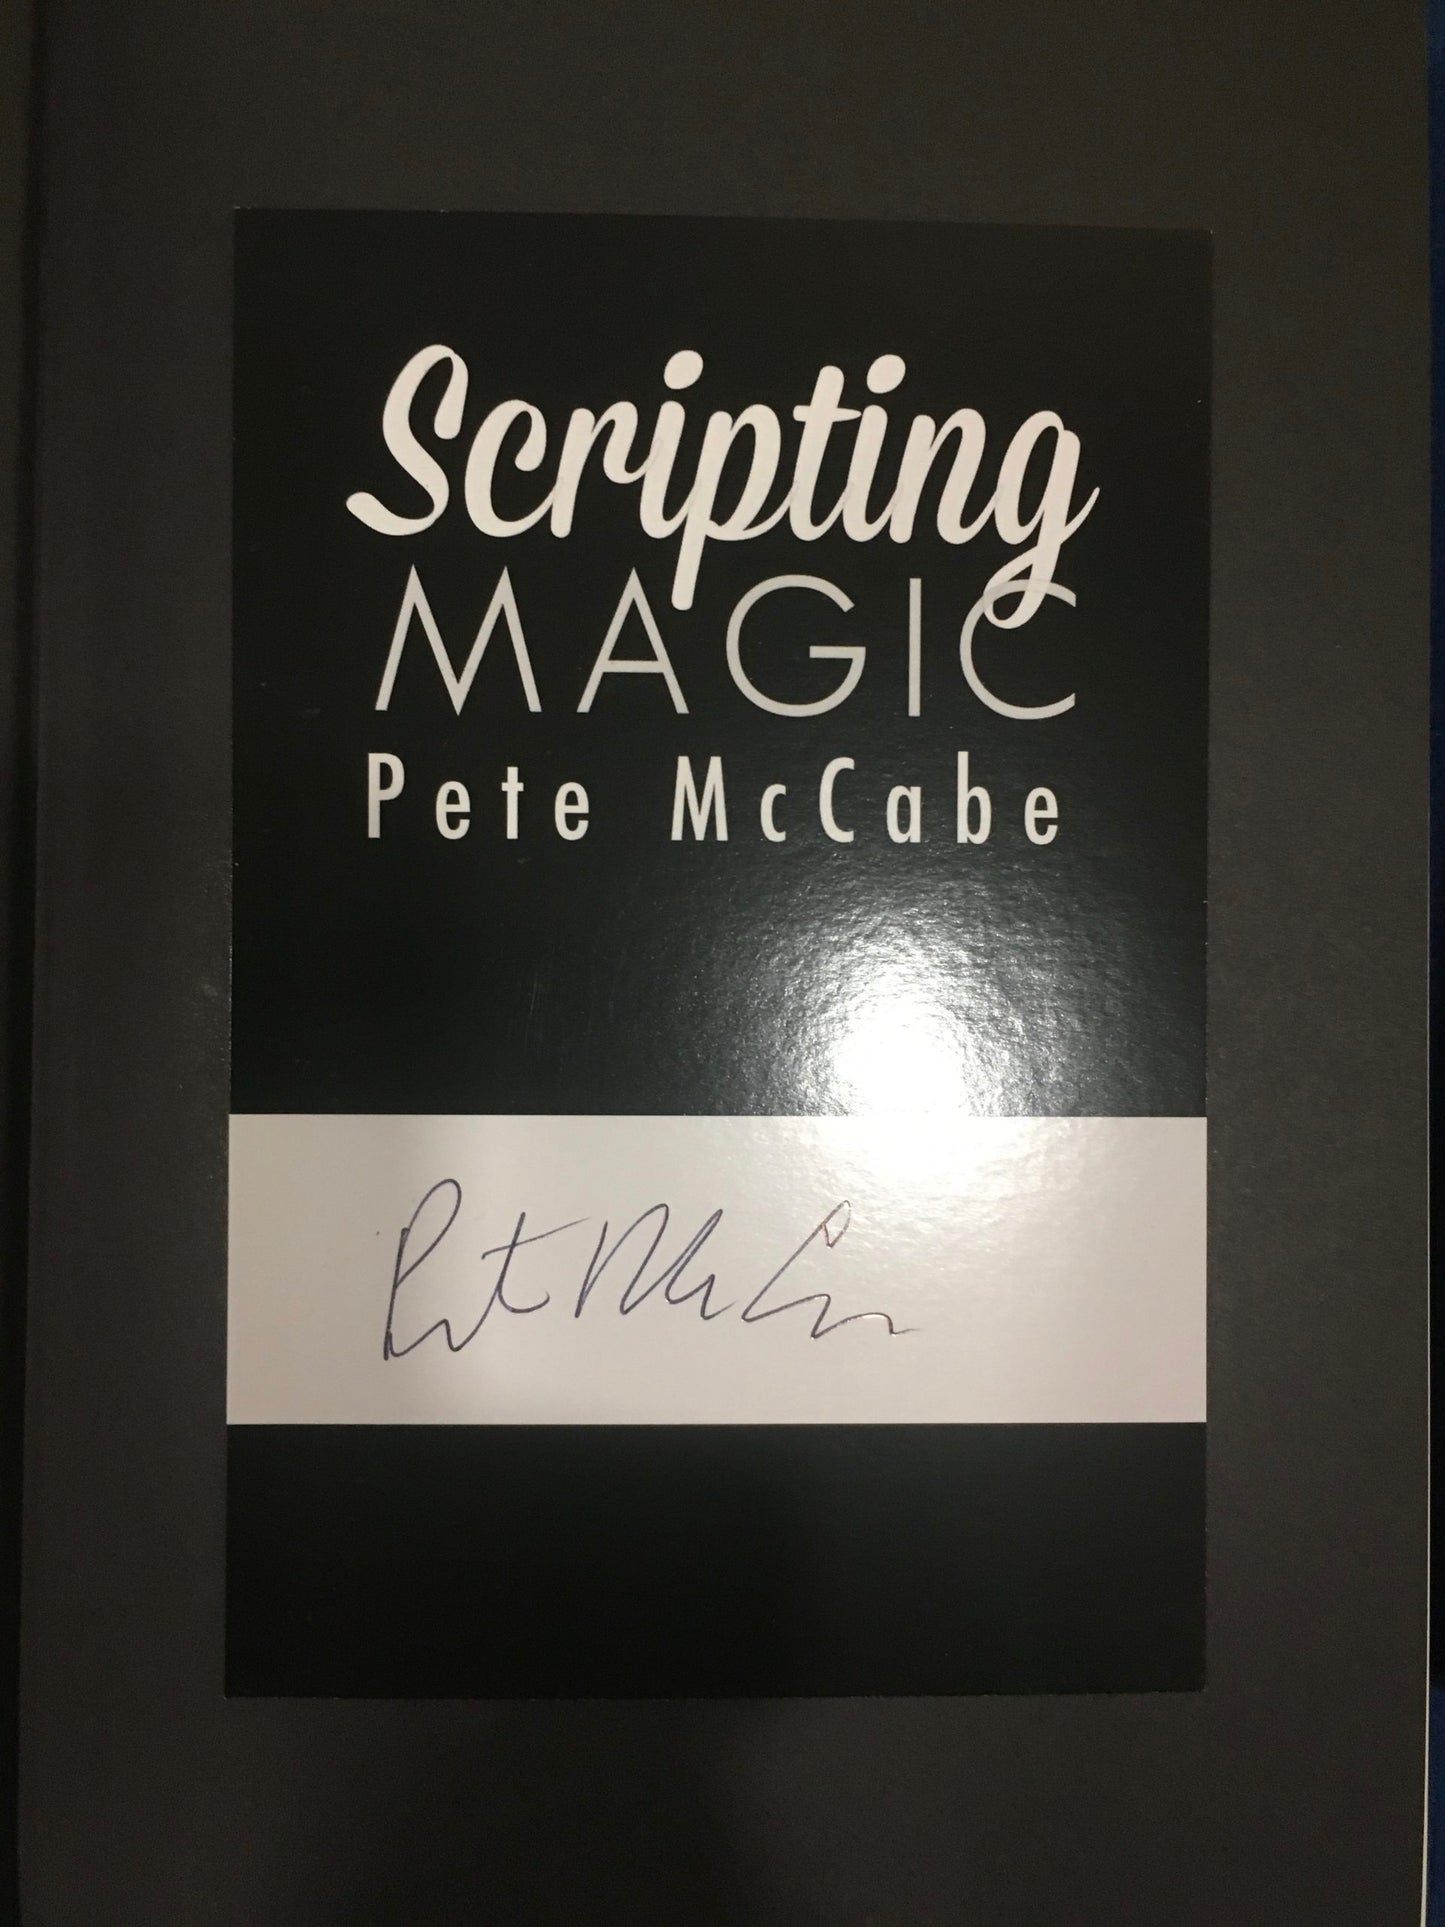 Scripting Magic Deluxe Set de Pete McCabe - Livre